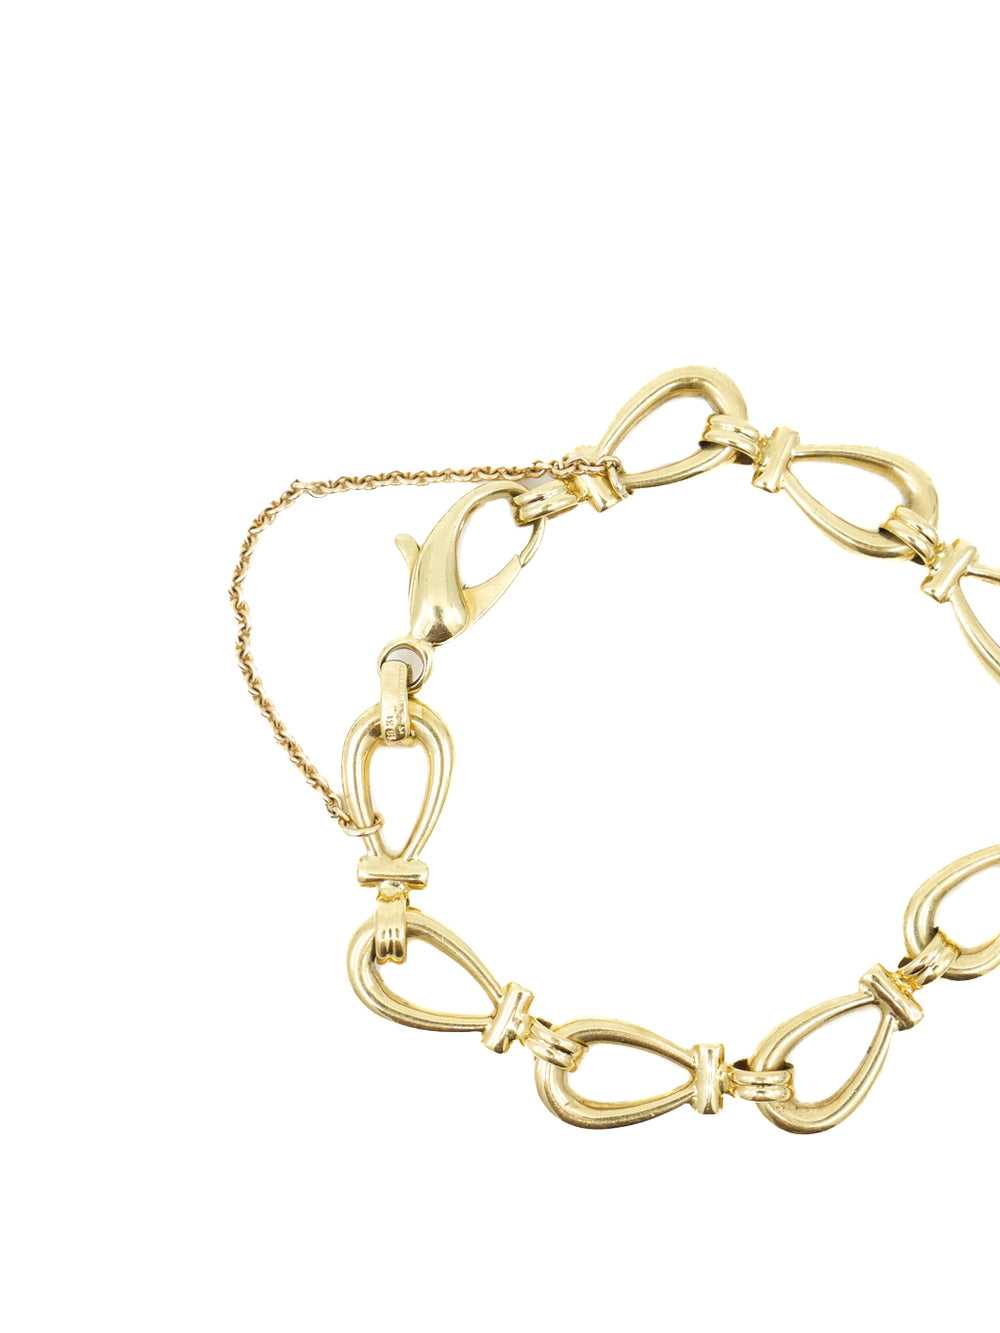 18k Horseshoe Link Chain Bracelet - image 3